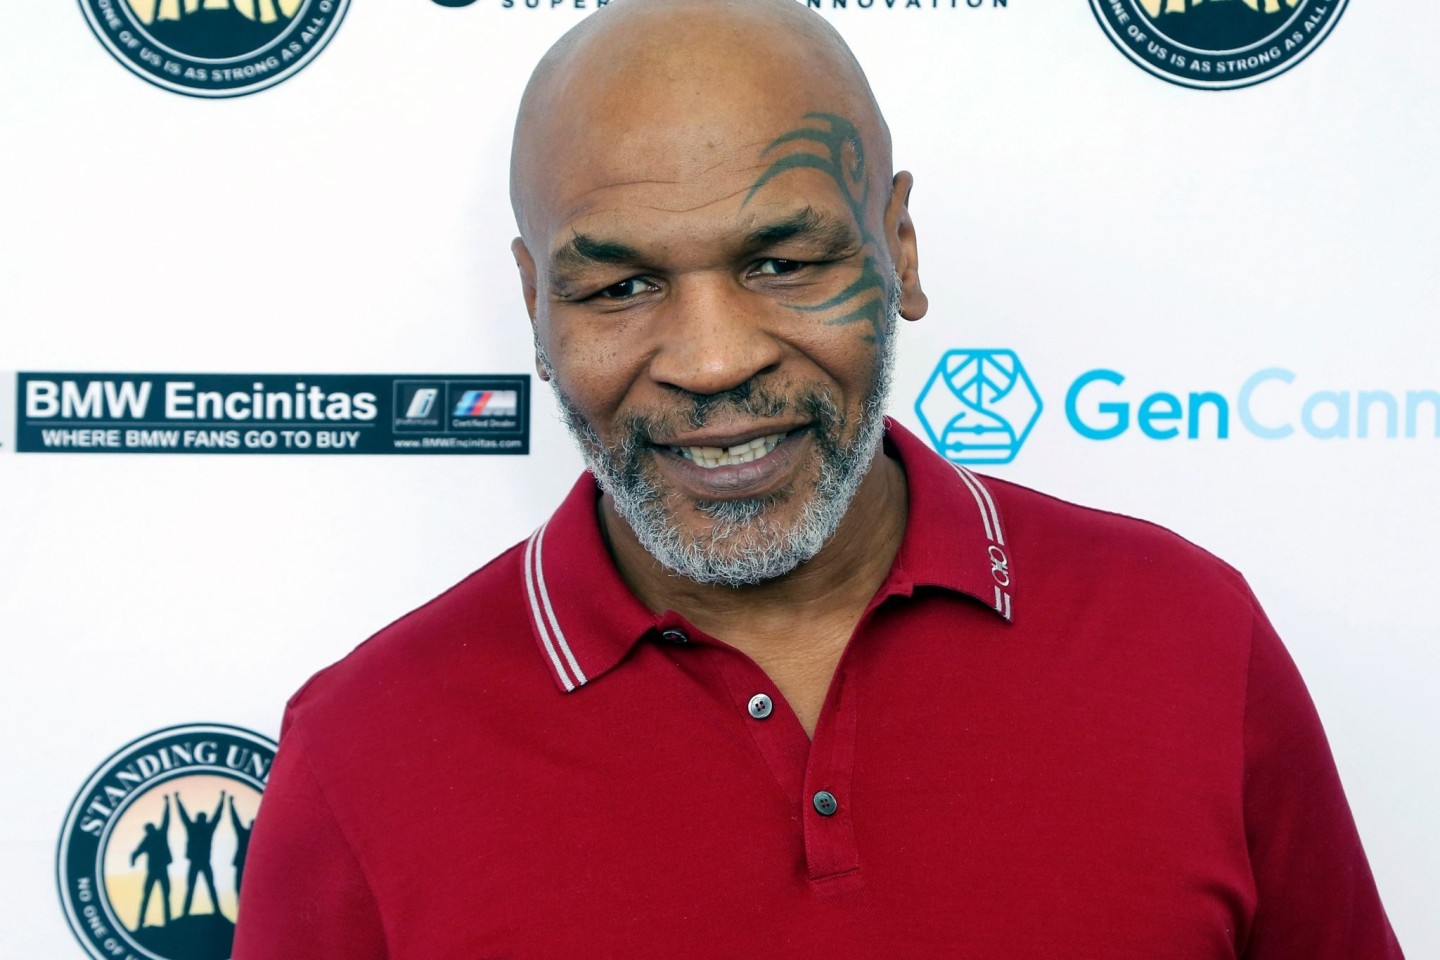 Ist die Wut mit ihm durchgegangen? Ex-Boxer Mike Tyson soll einen Mann im Flugzeug verprügelt haben.